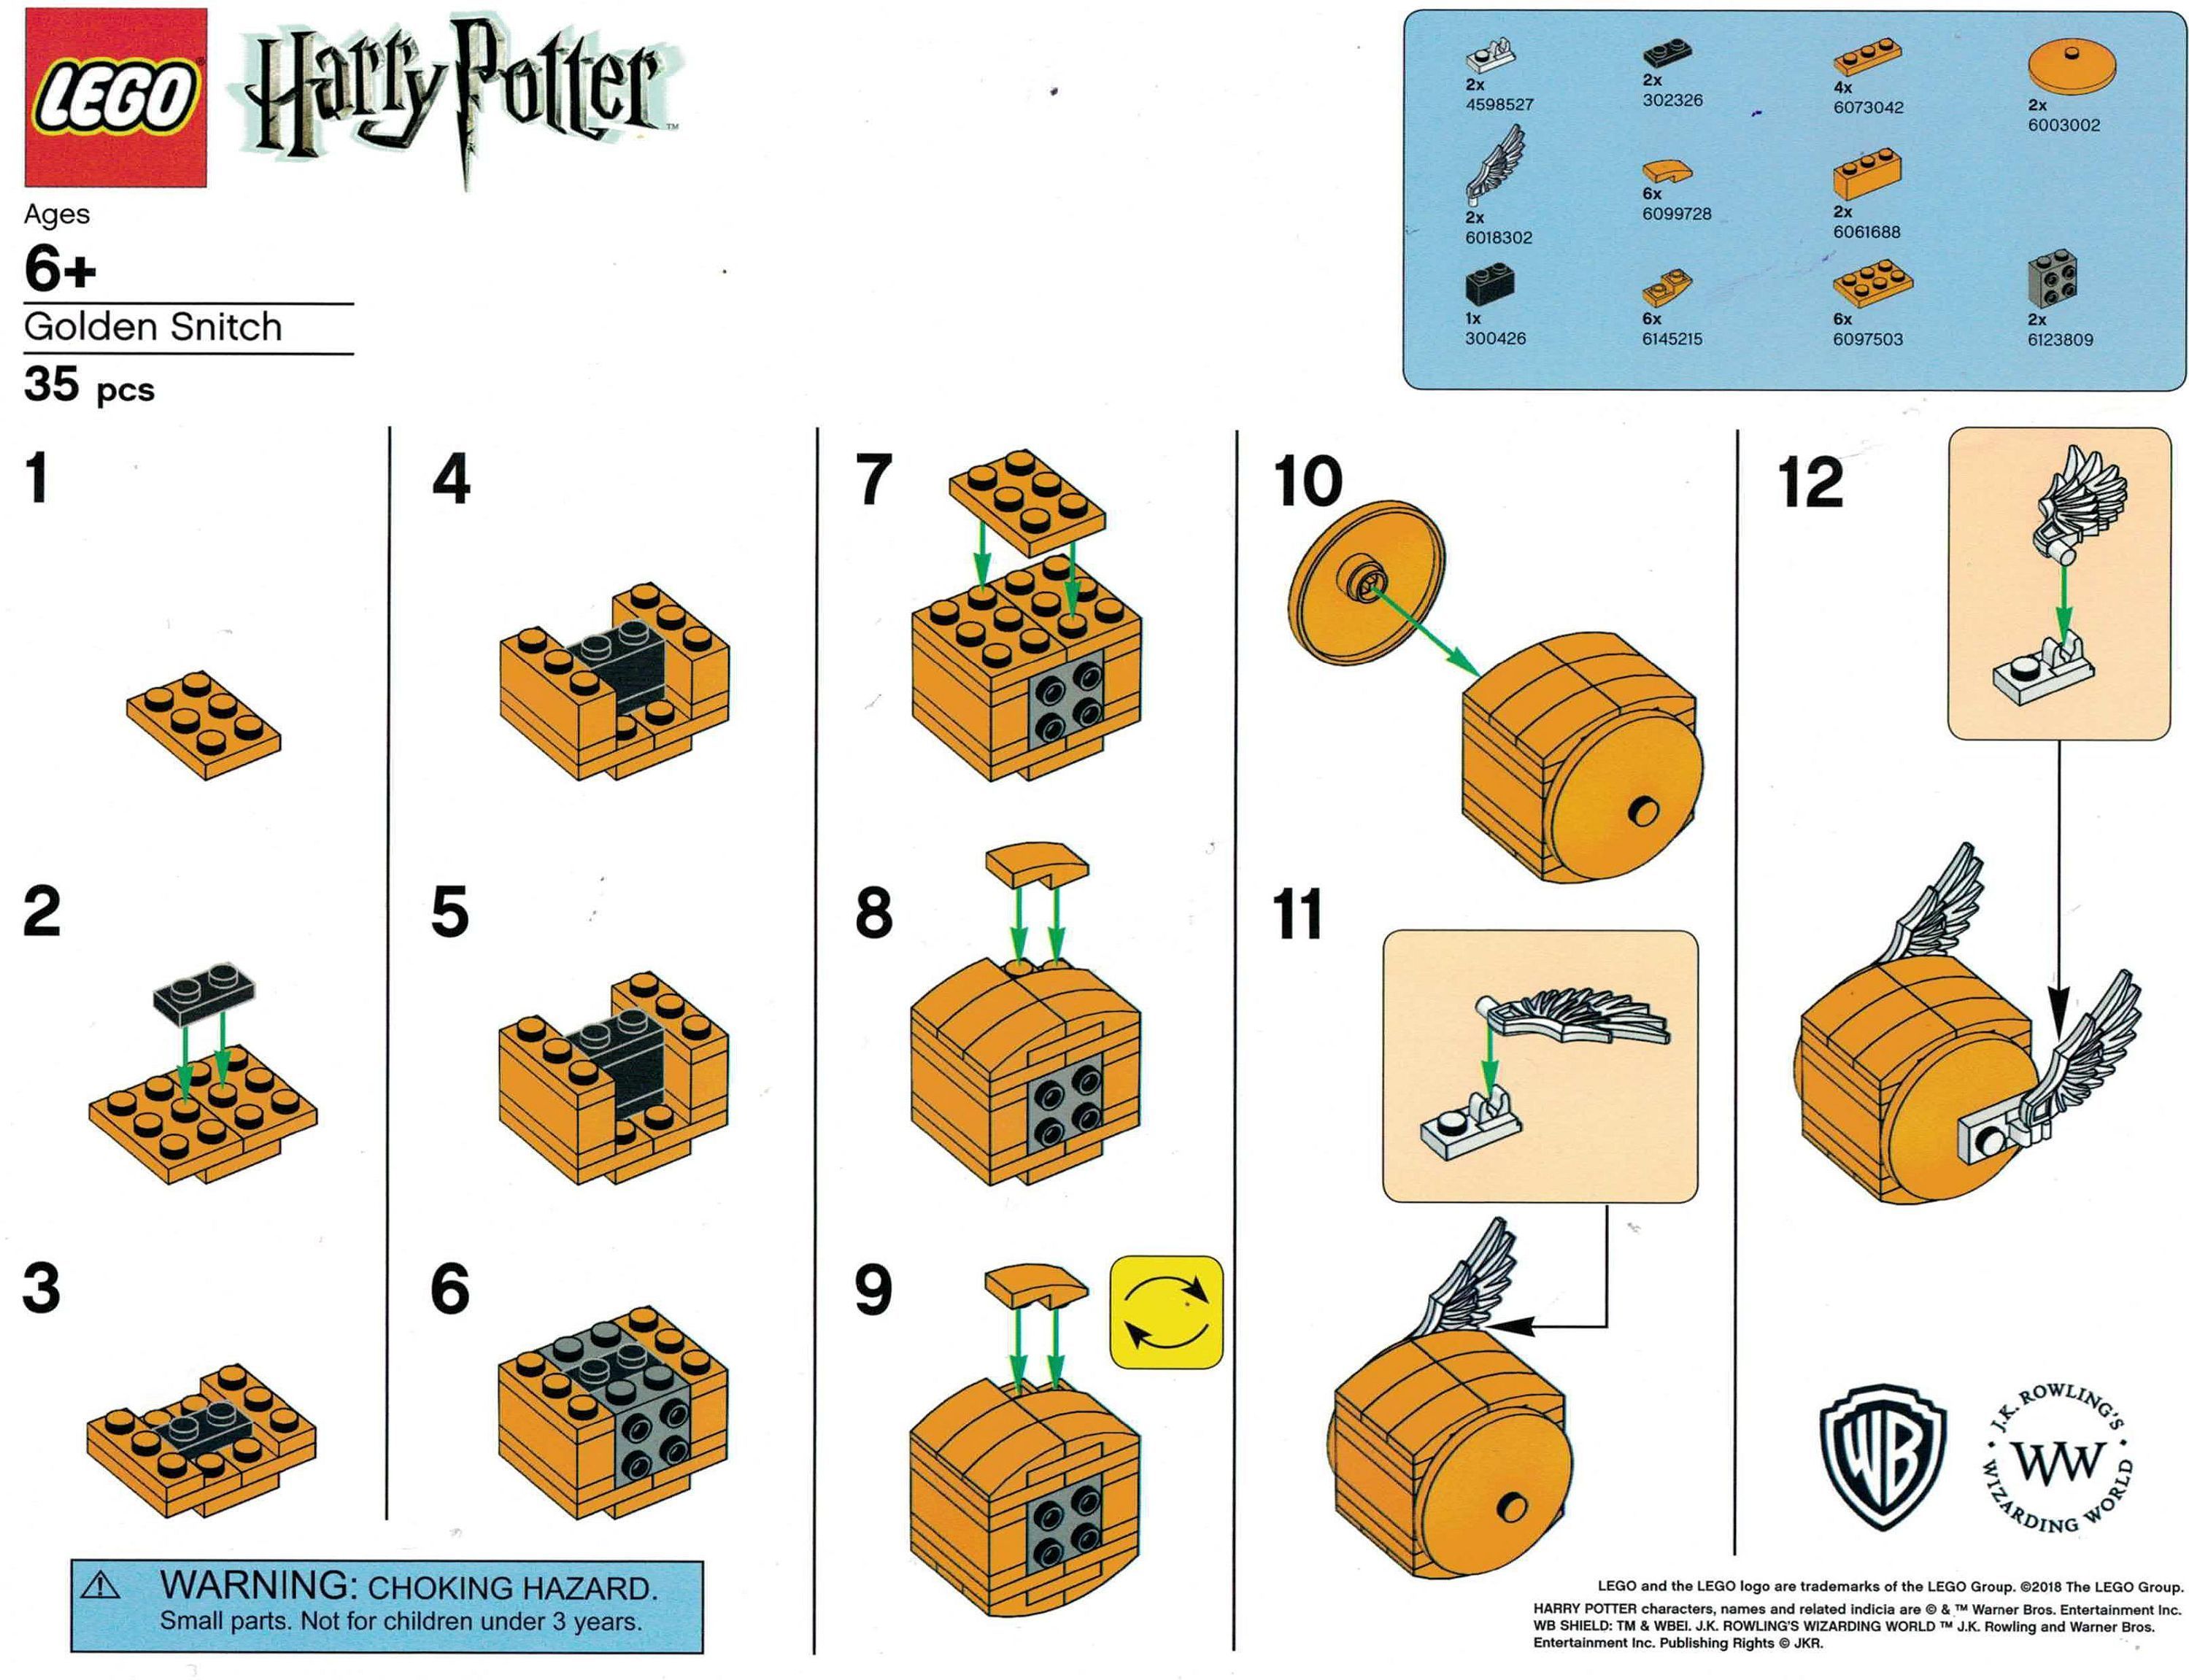 LEGO Harry Potter: Bauanleitung für goldenen Schnatz